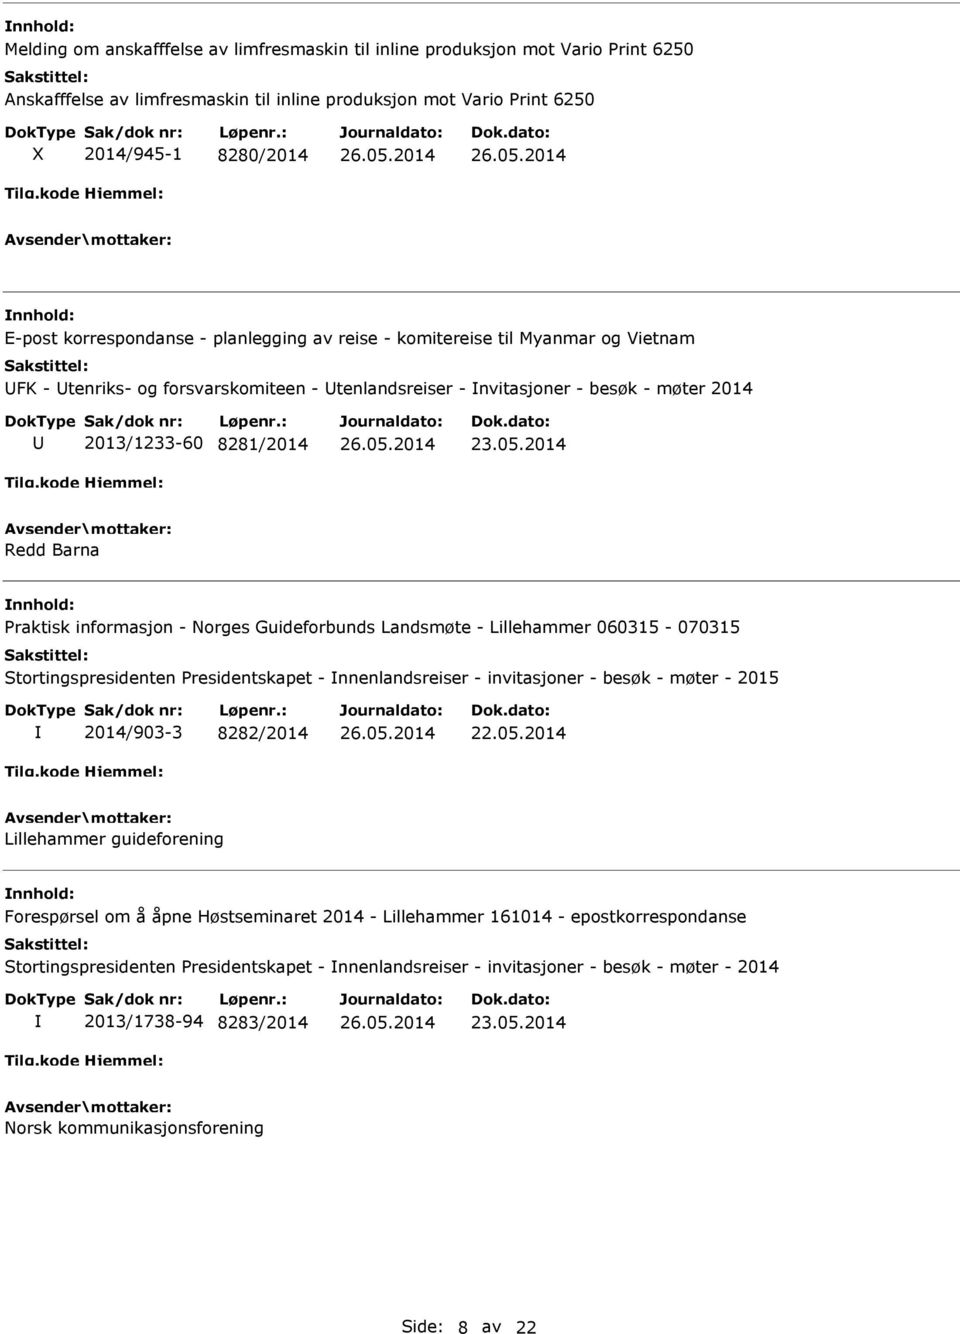 informasjon - Norges Guideforbunds Landsmøte - Lillehammer 060315-070315 Stortingspresidenten Presidentskapet - nnenlandsreiser - invitasjoner - besøk - møter - 2015 2014/903-3 8282/2014 22.05.